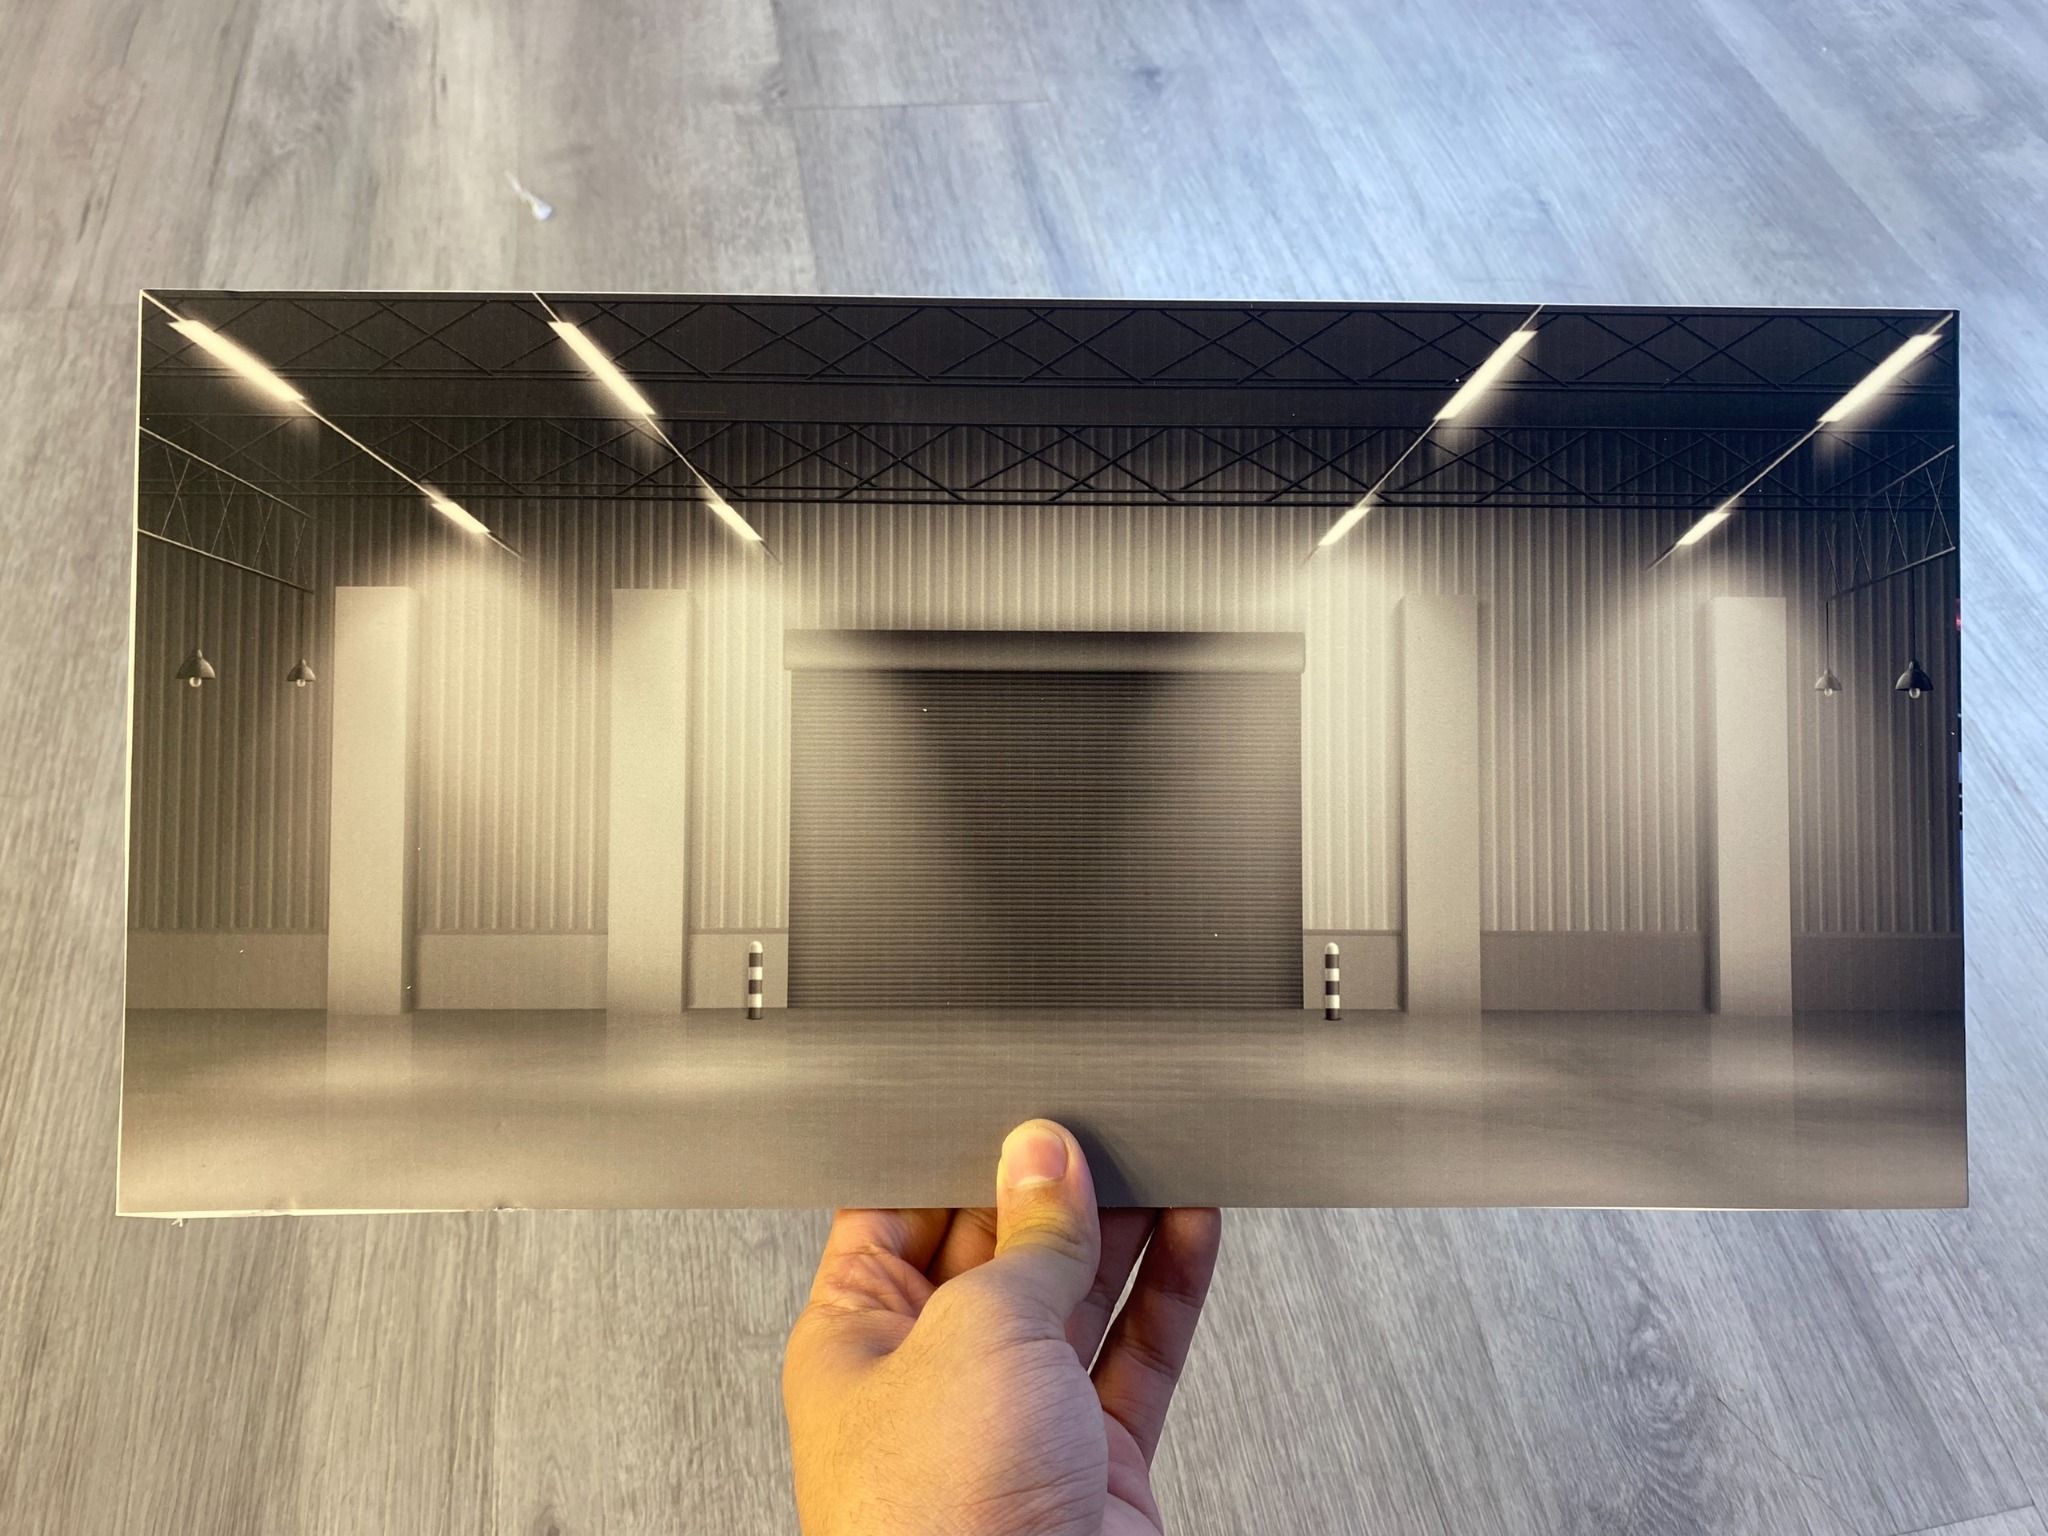  Diorama trưng bày 1 mặt background garage light gray dành cho mô hình DR016 